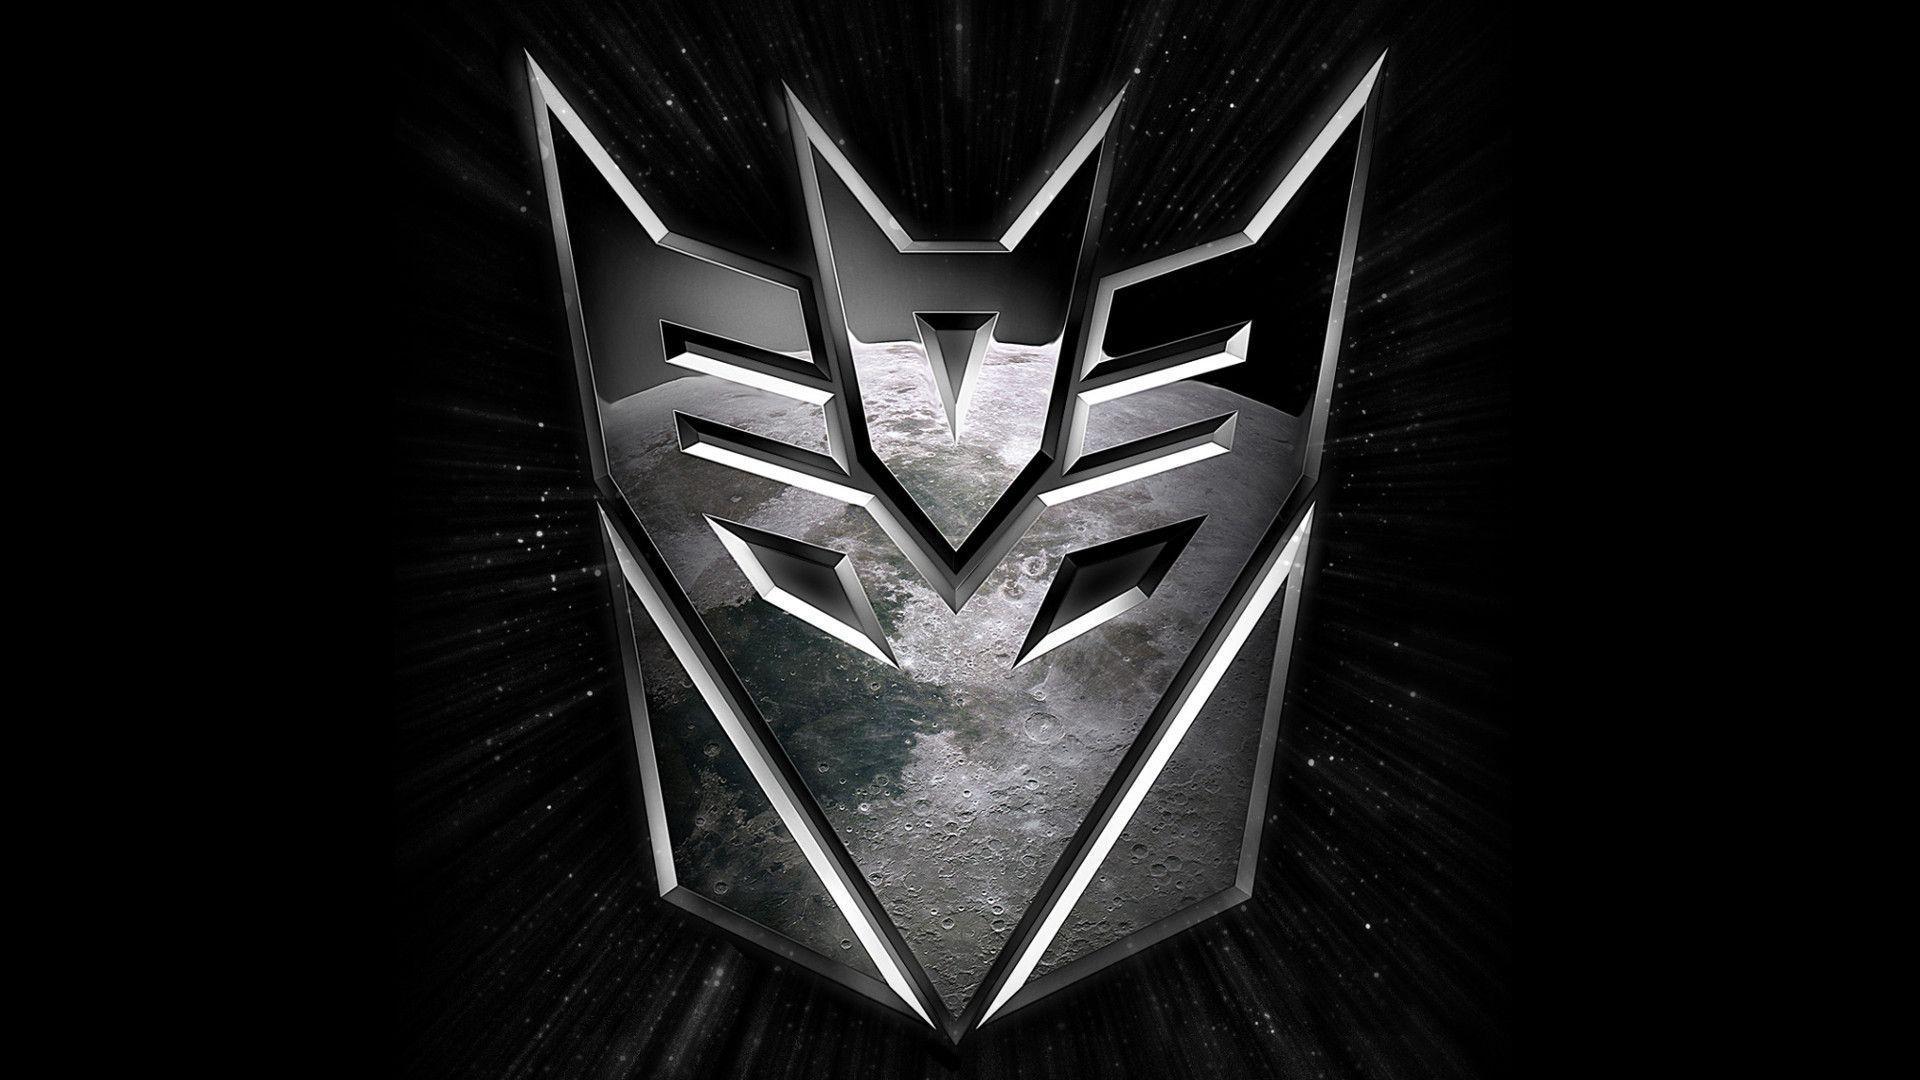 Descarga gratuita de fondo de pantalla para móvil de Transformers, Historietas.